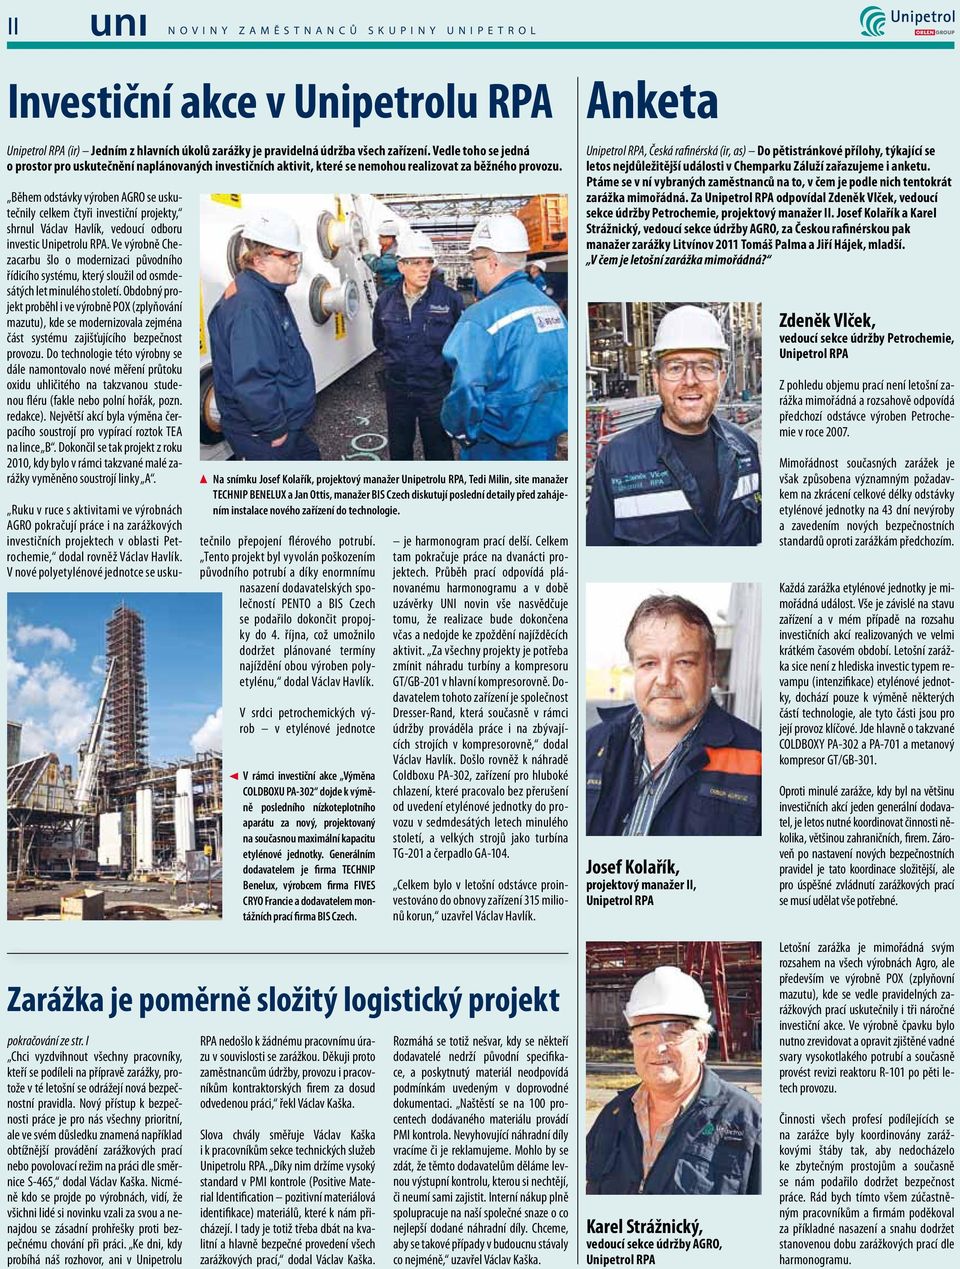 Během odstávky výroben AGRO se uskutečnily celkem čtyři investiční projekty, shrnul Václav Havlík, vedoucí odboru investic Unipetrolu RPA.